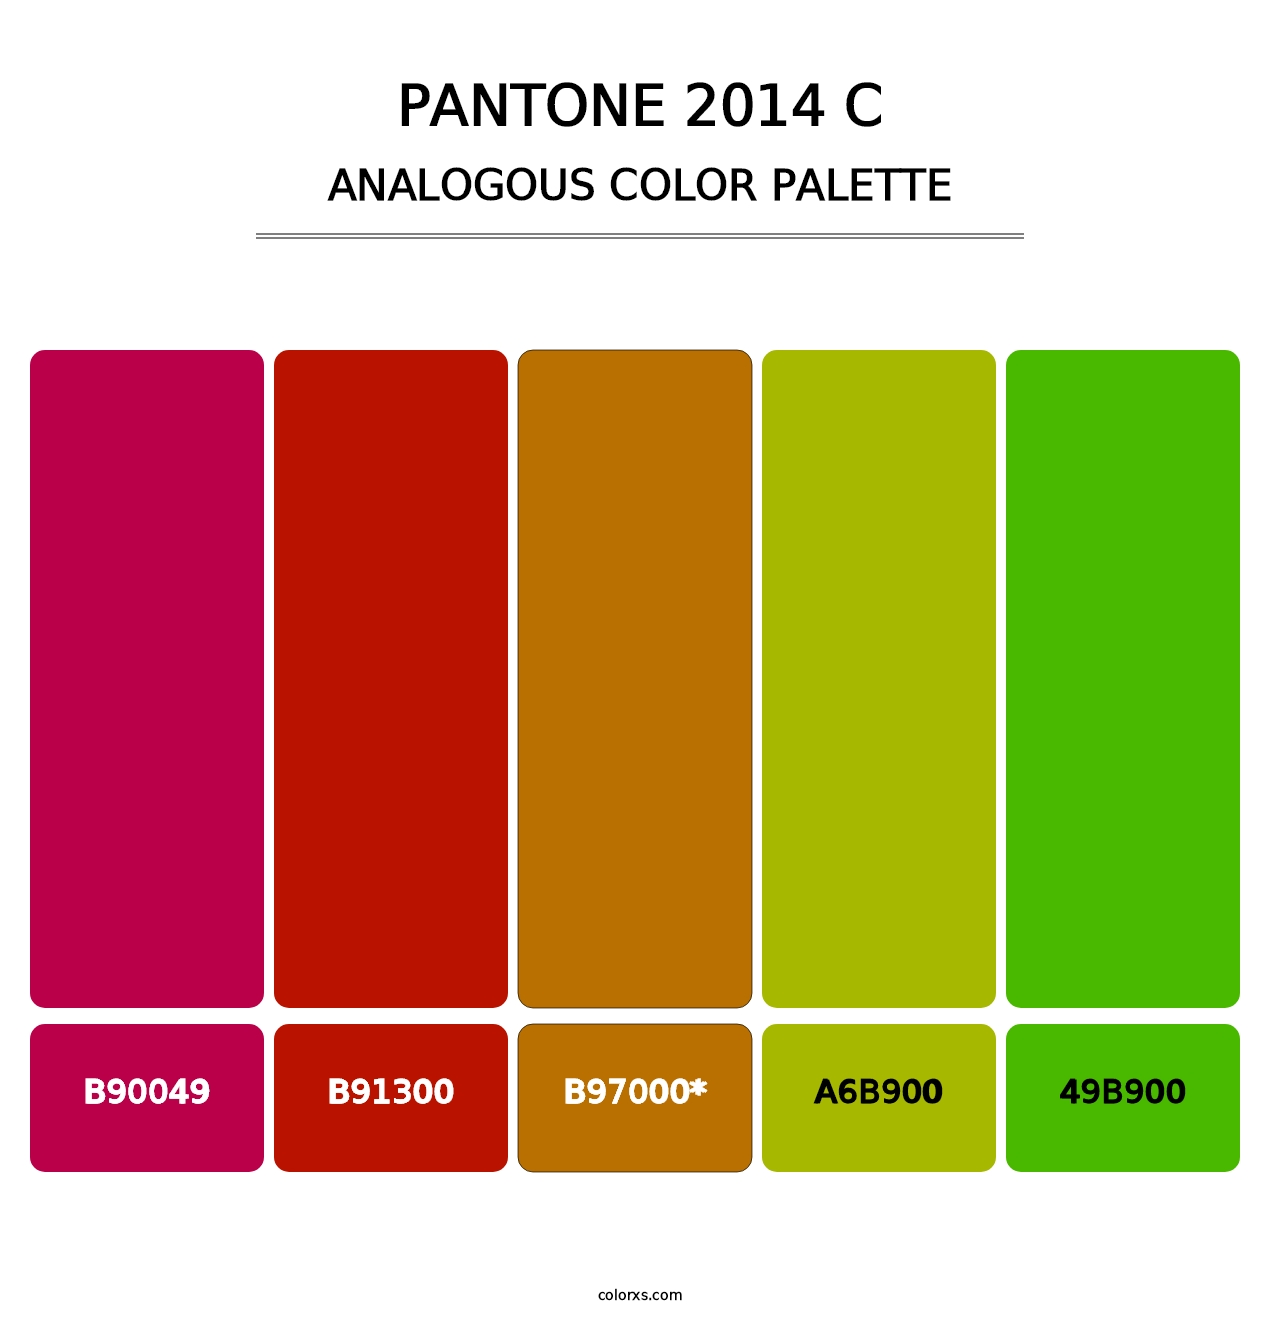 PANTONE 2014 C - Analogous Color Palette